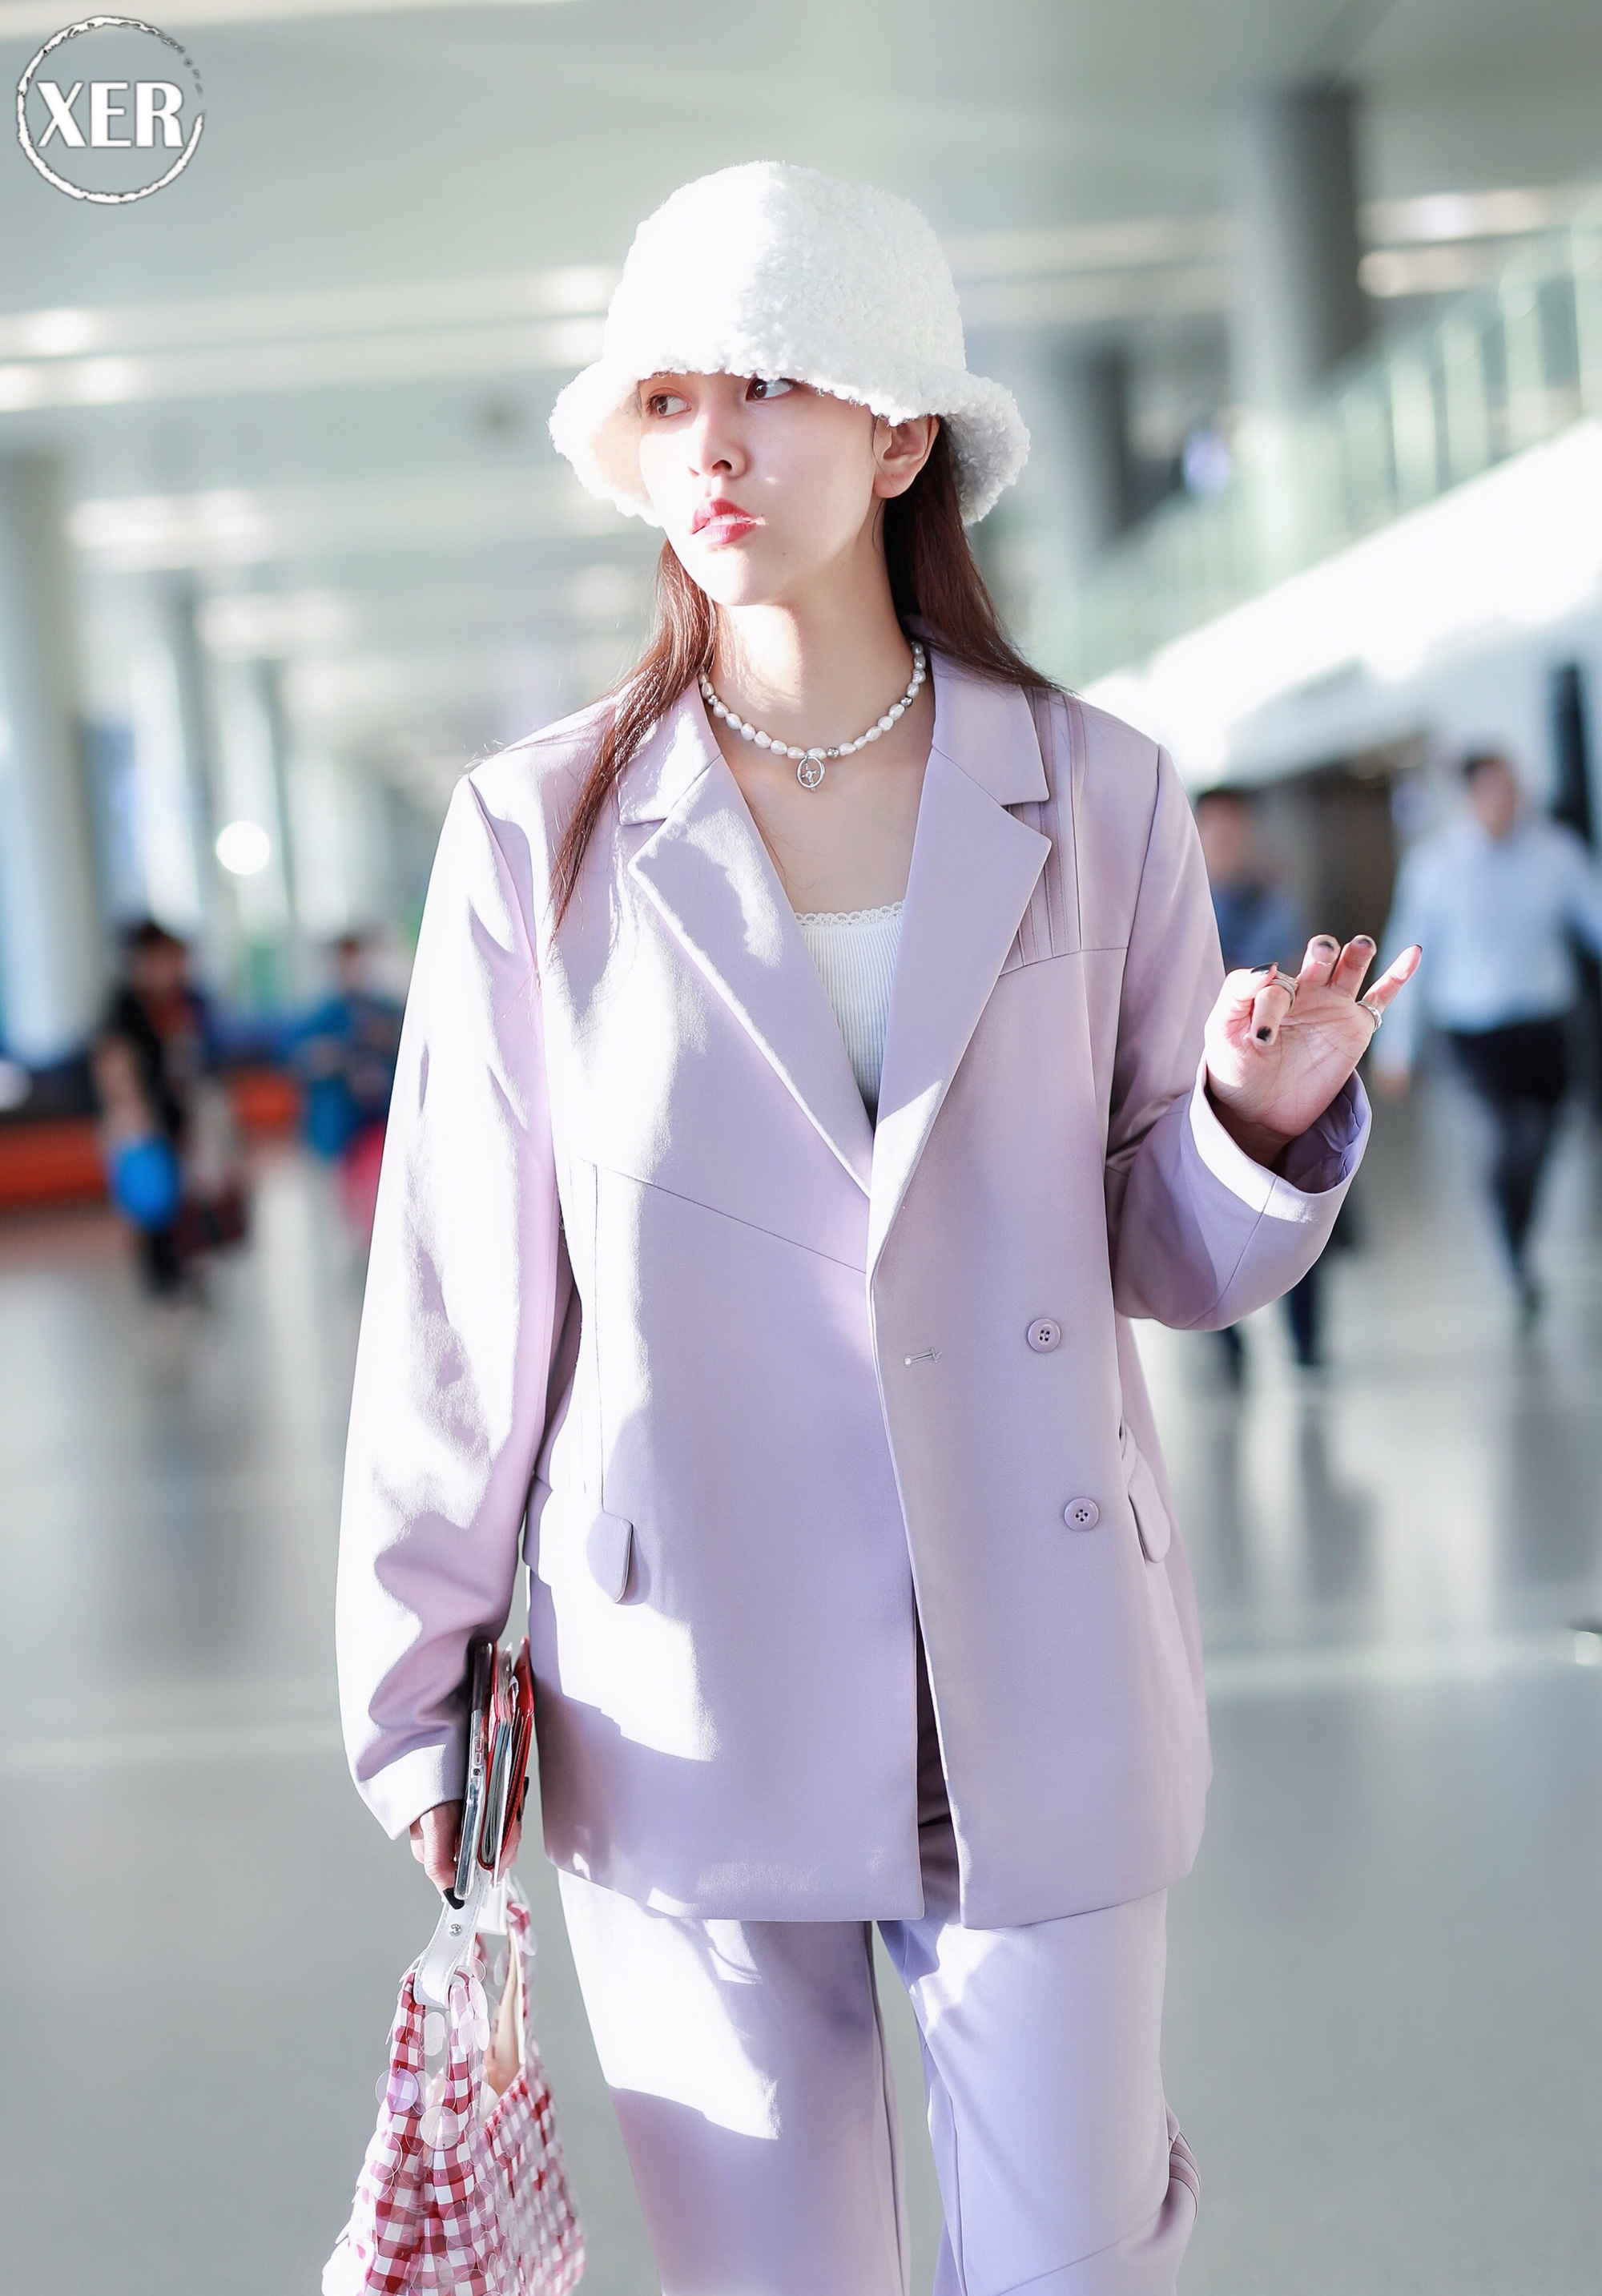 Mê hoặc loạt mỹ nhân Cbiz lúc này là blazer màu tím lilac, sắm theo là được khen ăn mặc có gu - Ảnh 6.